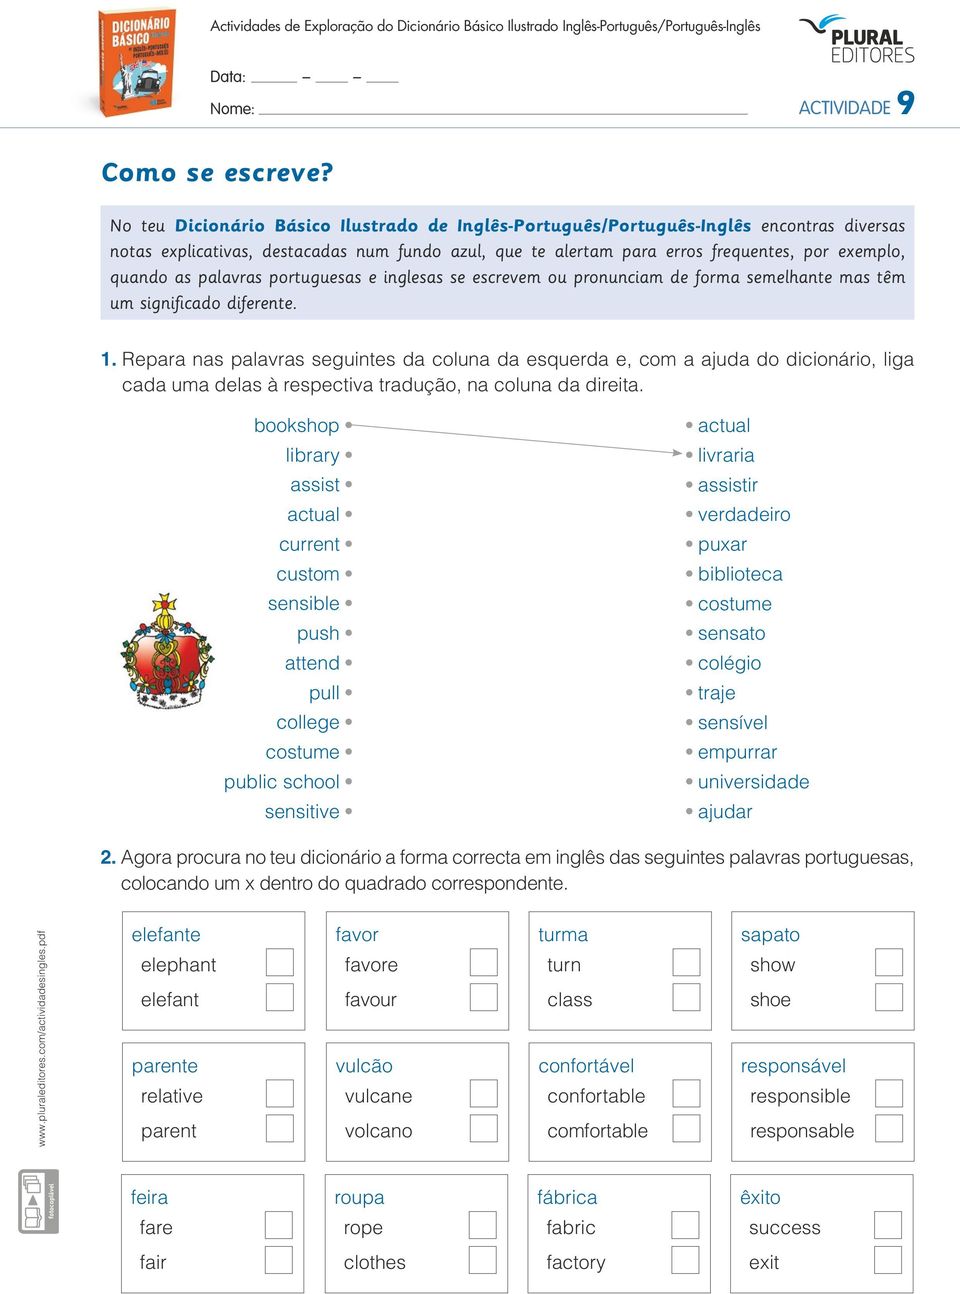 palavras portuguesas e inglesas se escrevem ou pronunciam de forma semelhante mas têm um significado diferente. 1.